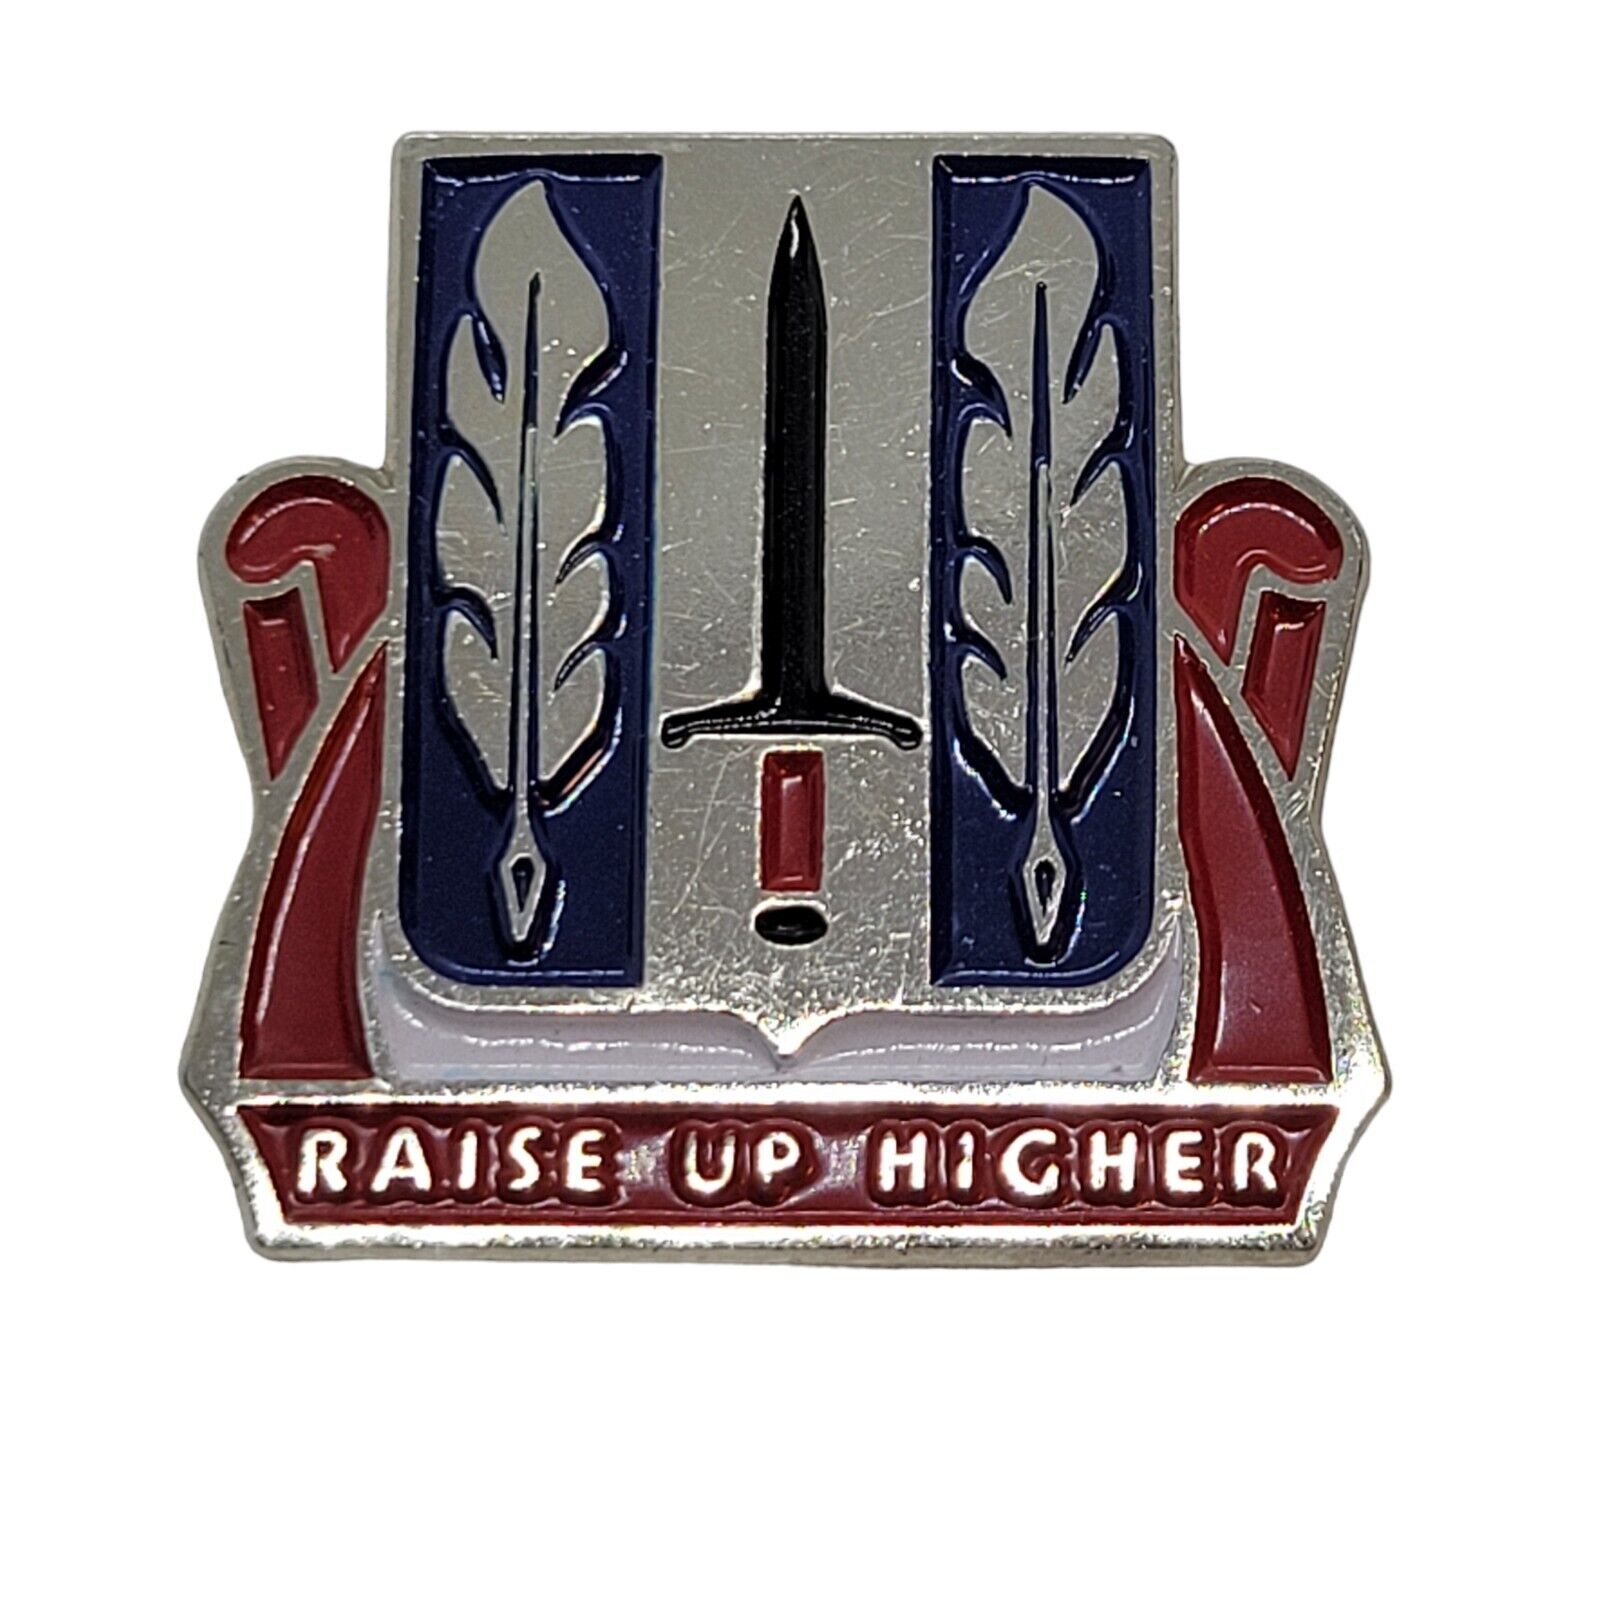 Raise Up Higher 516th Personnel Services Battalion Unit Crest Pin